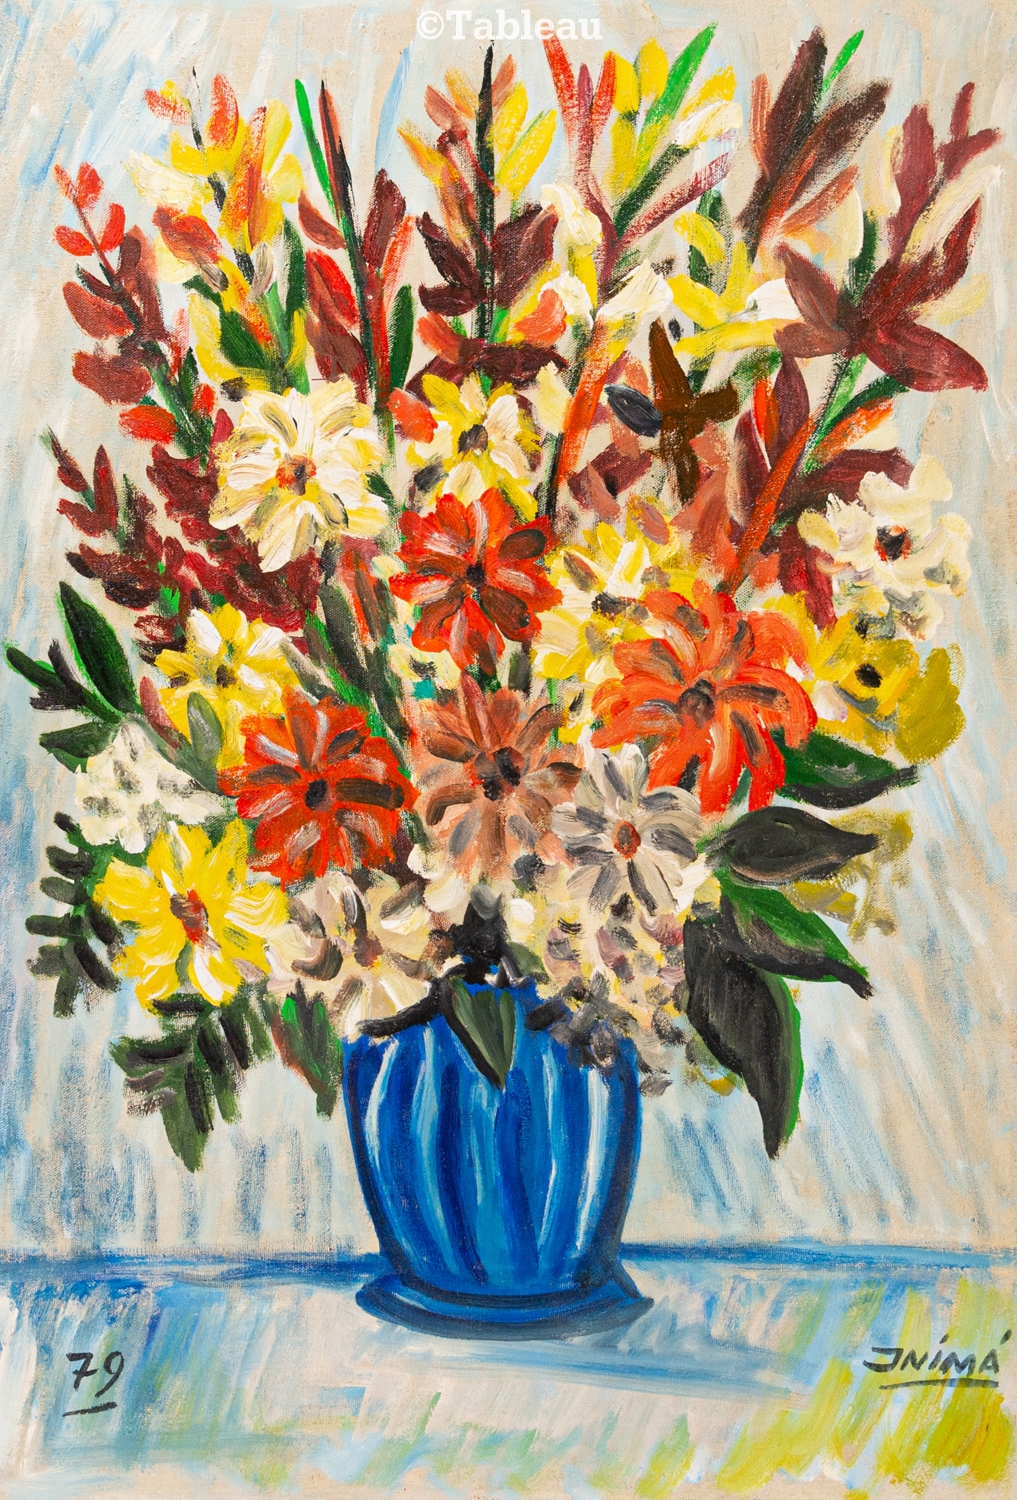 Vaso com flores by Inimá de Paula, 1979